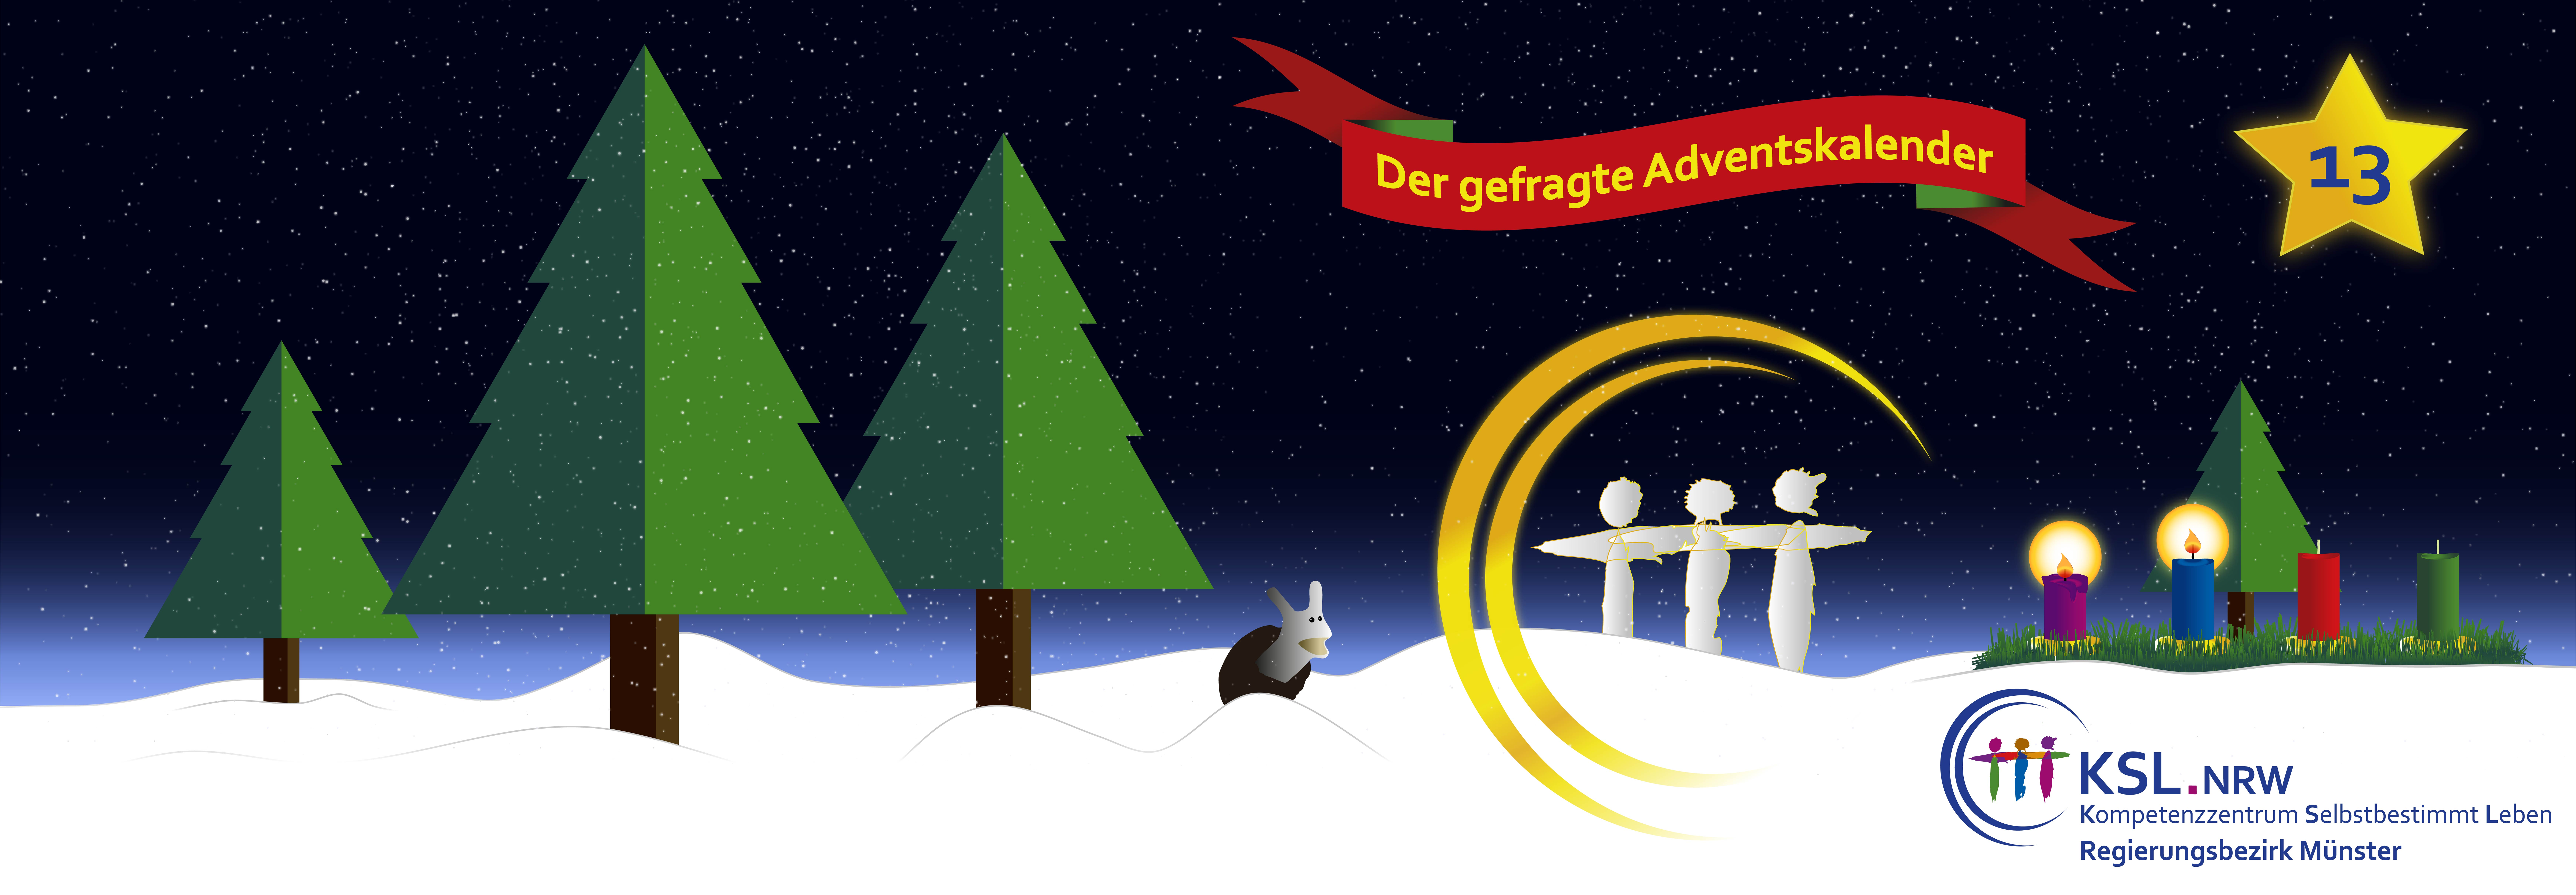 Der gefragte Adventskalender - KSL Münster - weihnachtlicher Hintergrund - vier Tannenbäume - ein Stern mit der Nummer 13 - ein Adventskranz mit vier Kerzen